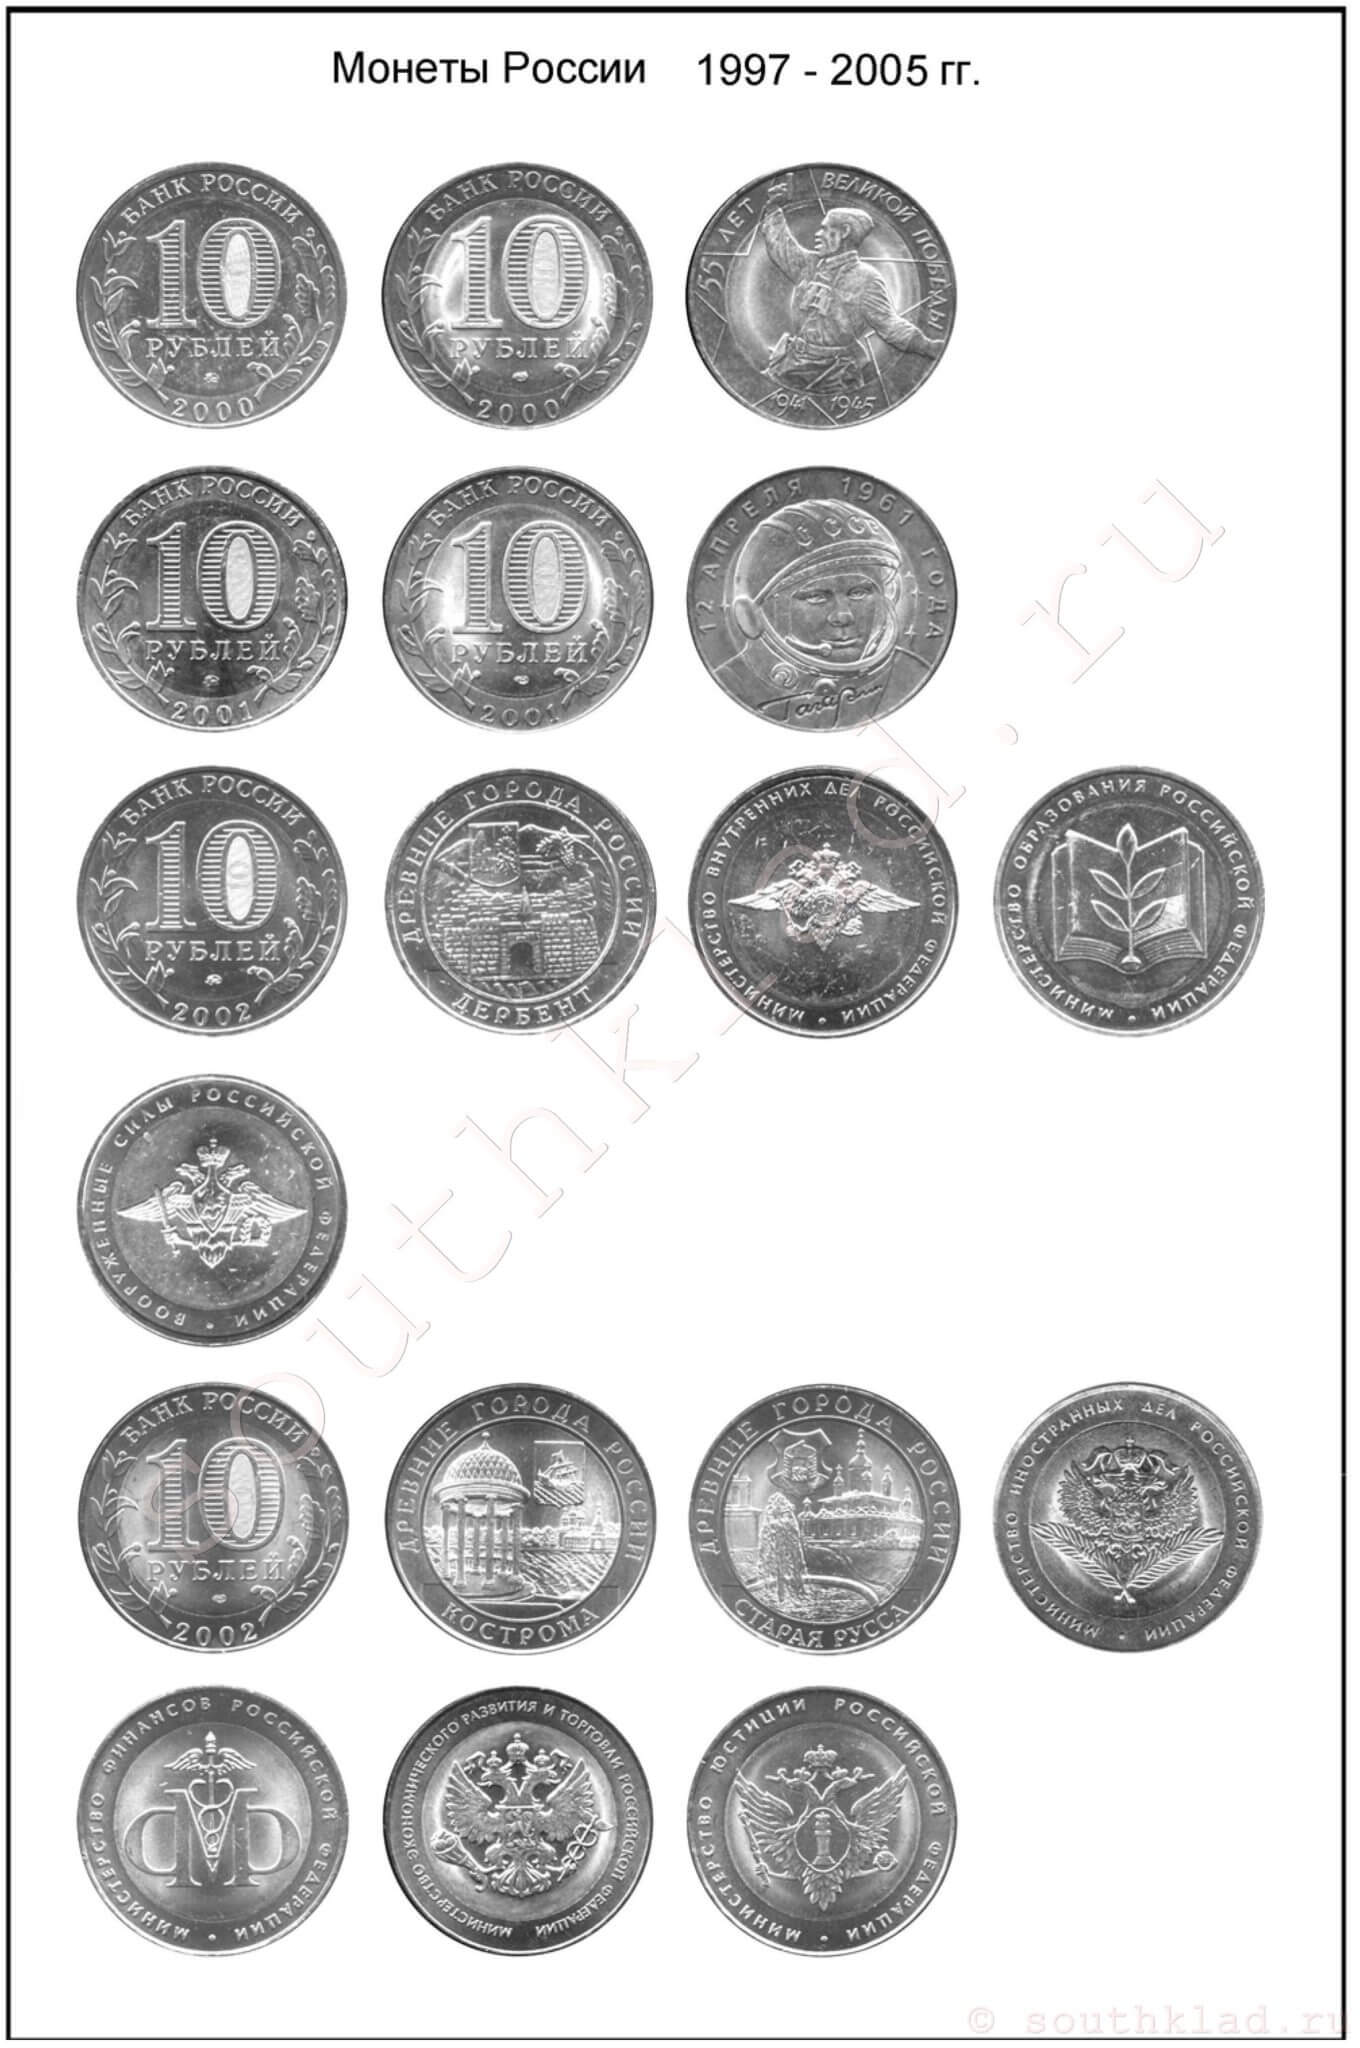 10 рублей. Монеты России образца 1997 года